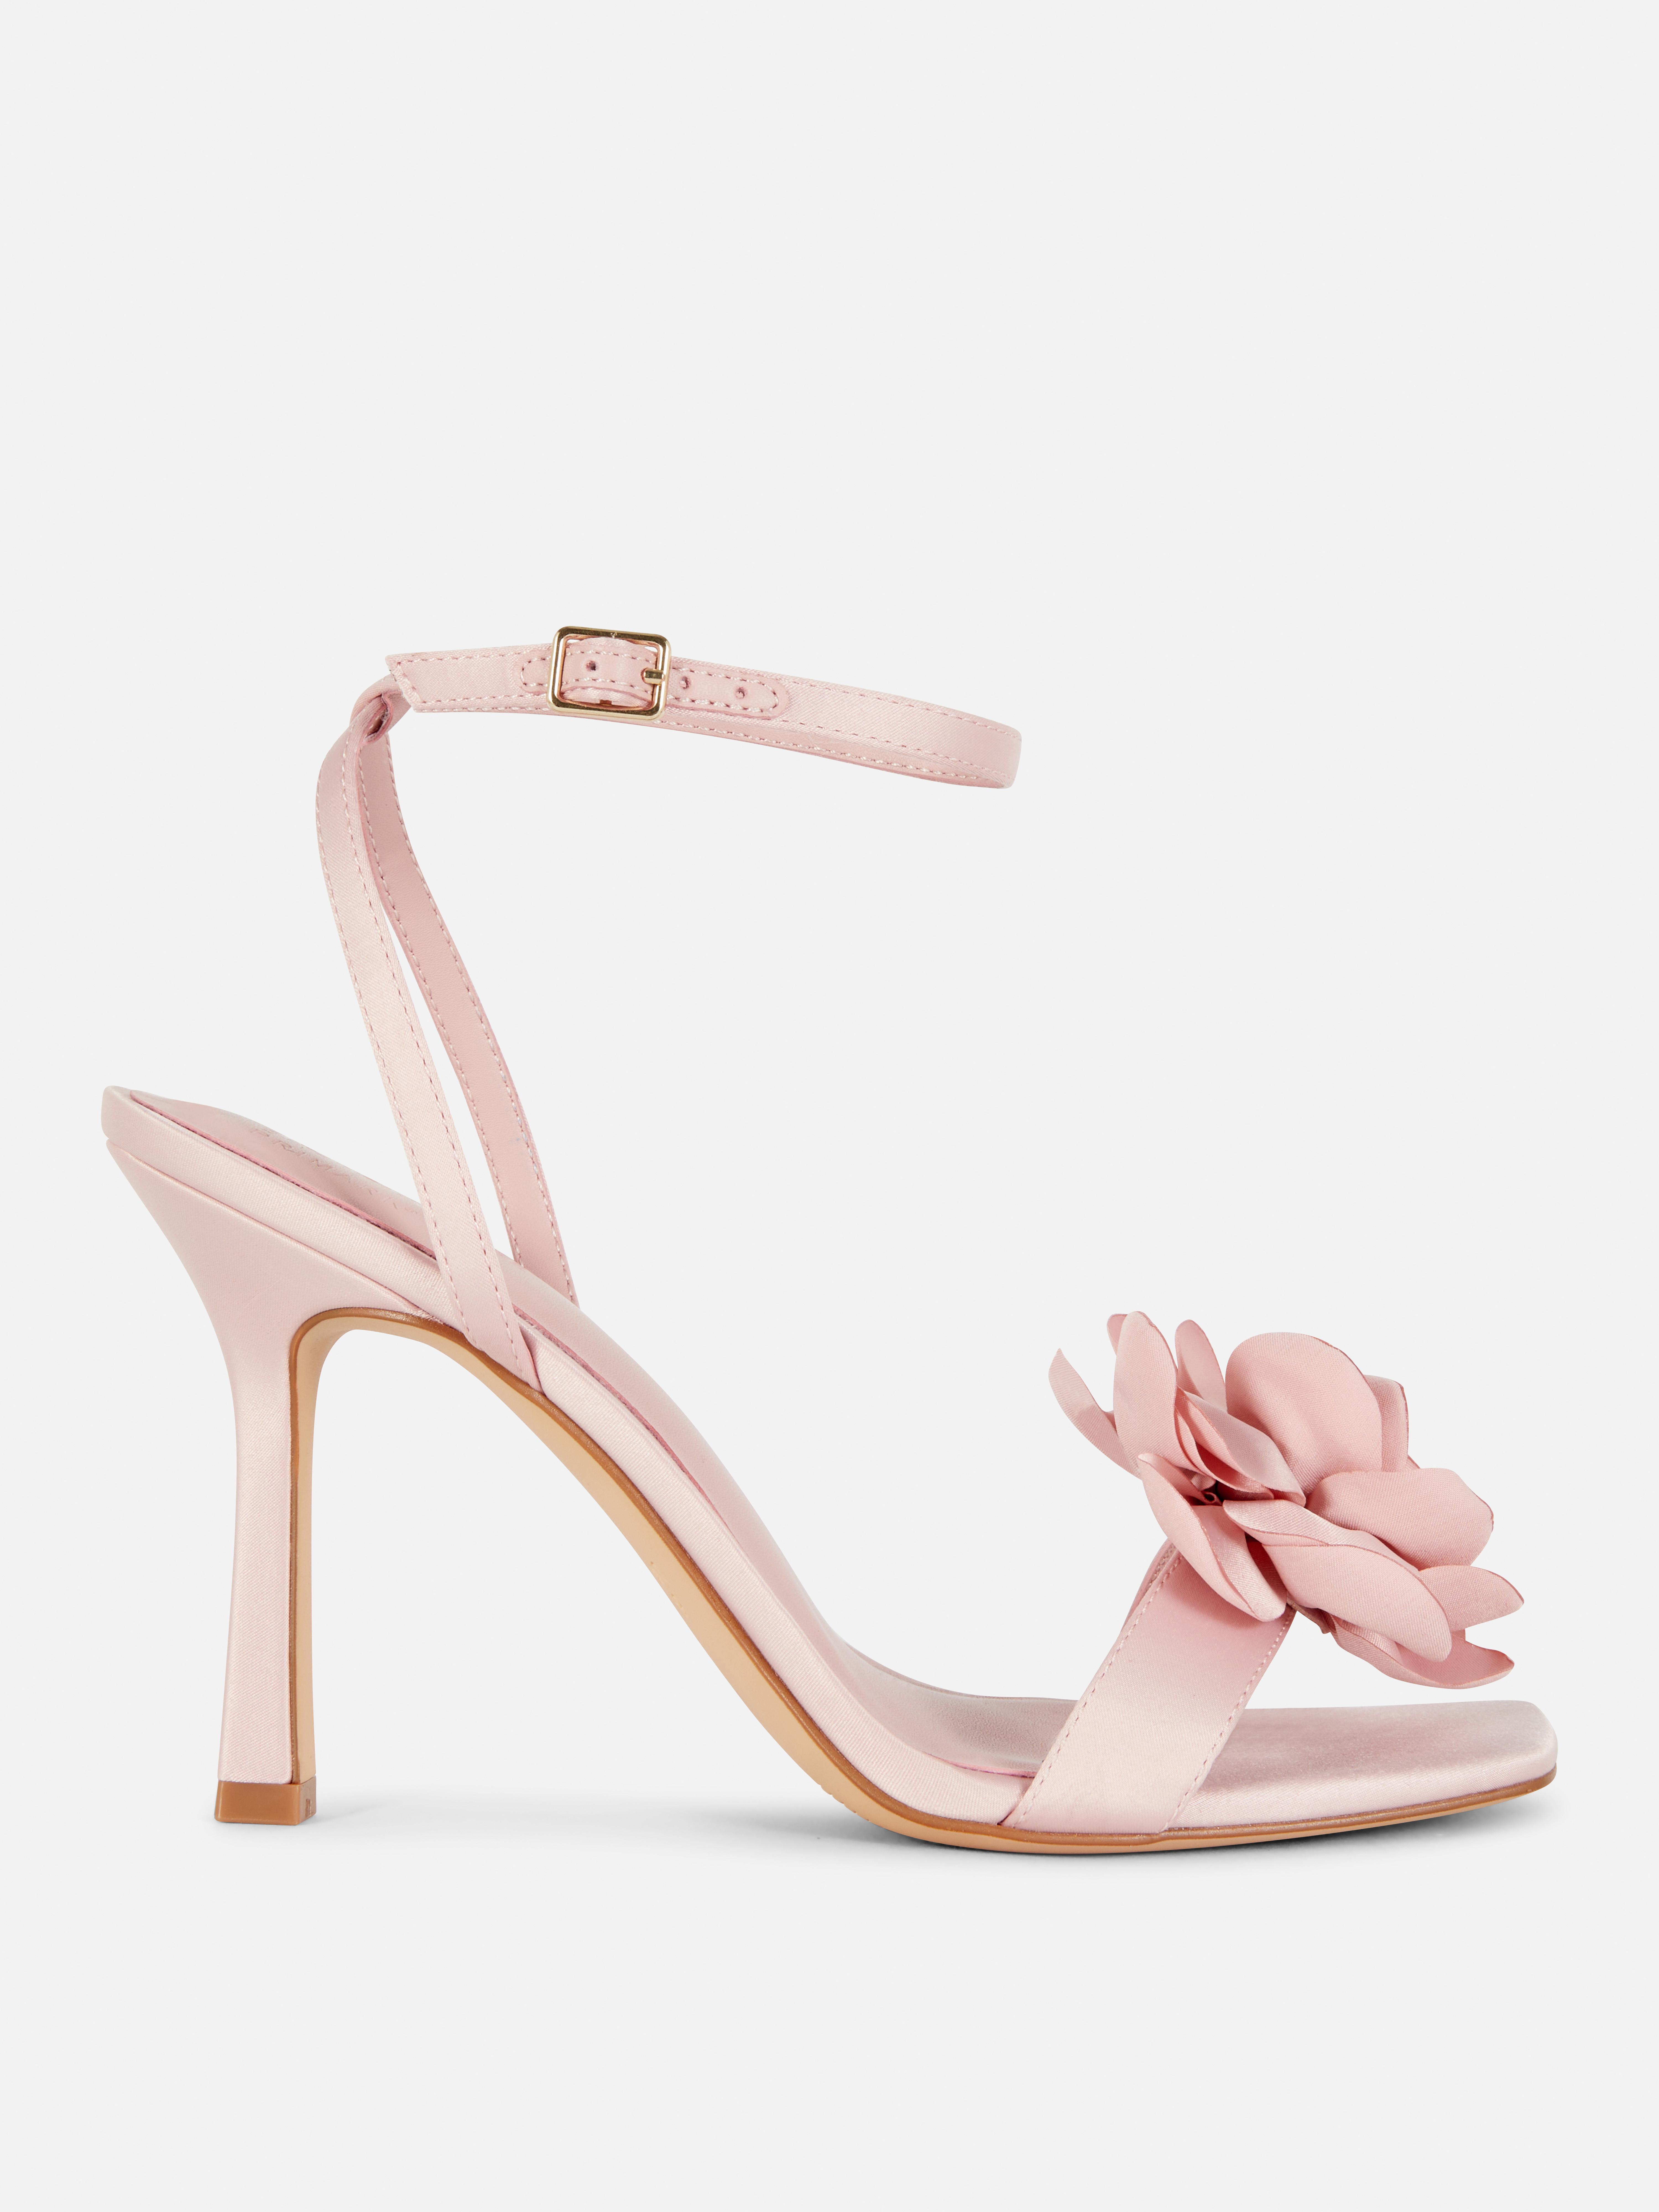 Sandale stiletto cu detaliu floral Rita Ora